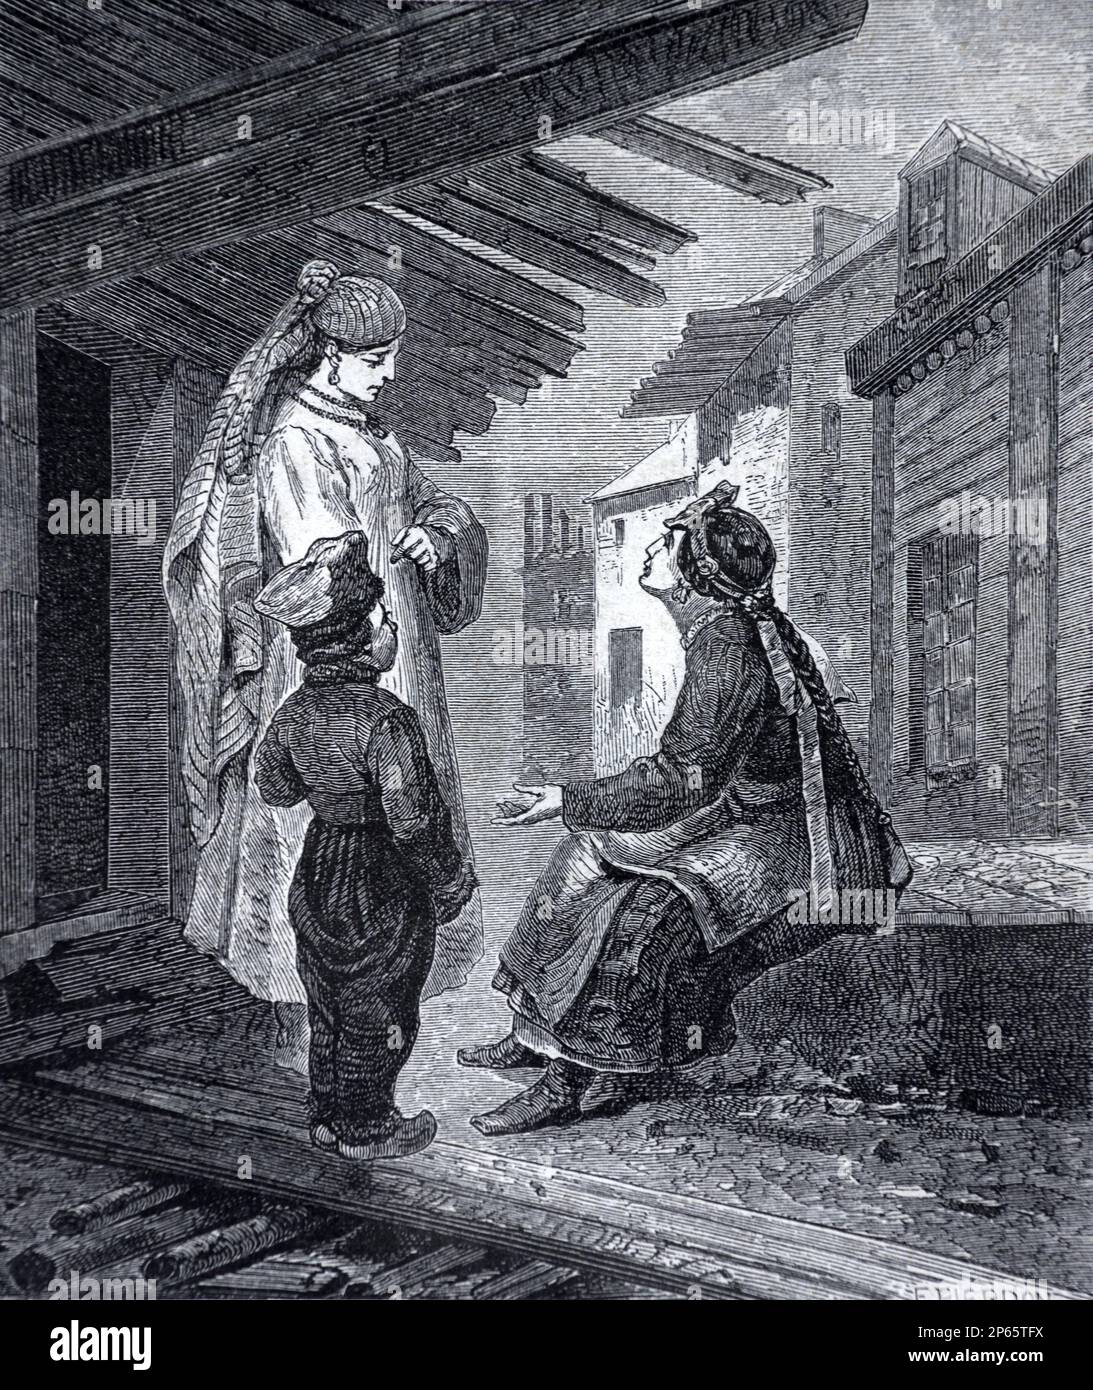 Femmes et enfants dans la vieille ville de Berezovo, Okrug autonome de Khanty-Mansi, portant le costume régional de Sibérie Russie. Gravure ancienne ou illustration 1862 Banque D'Images